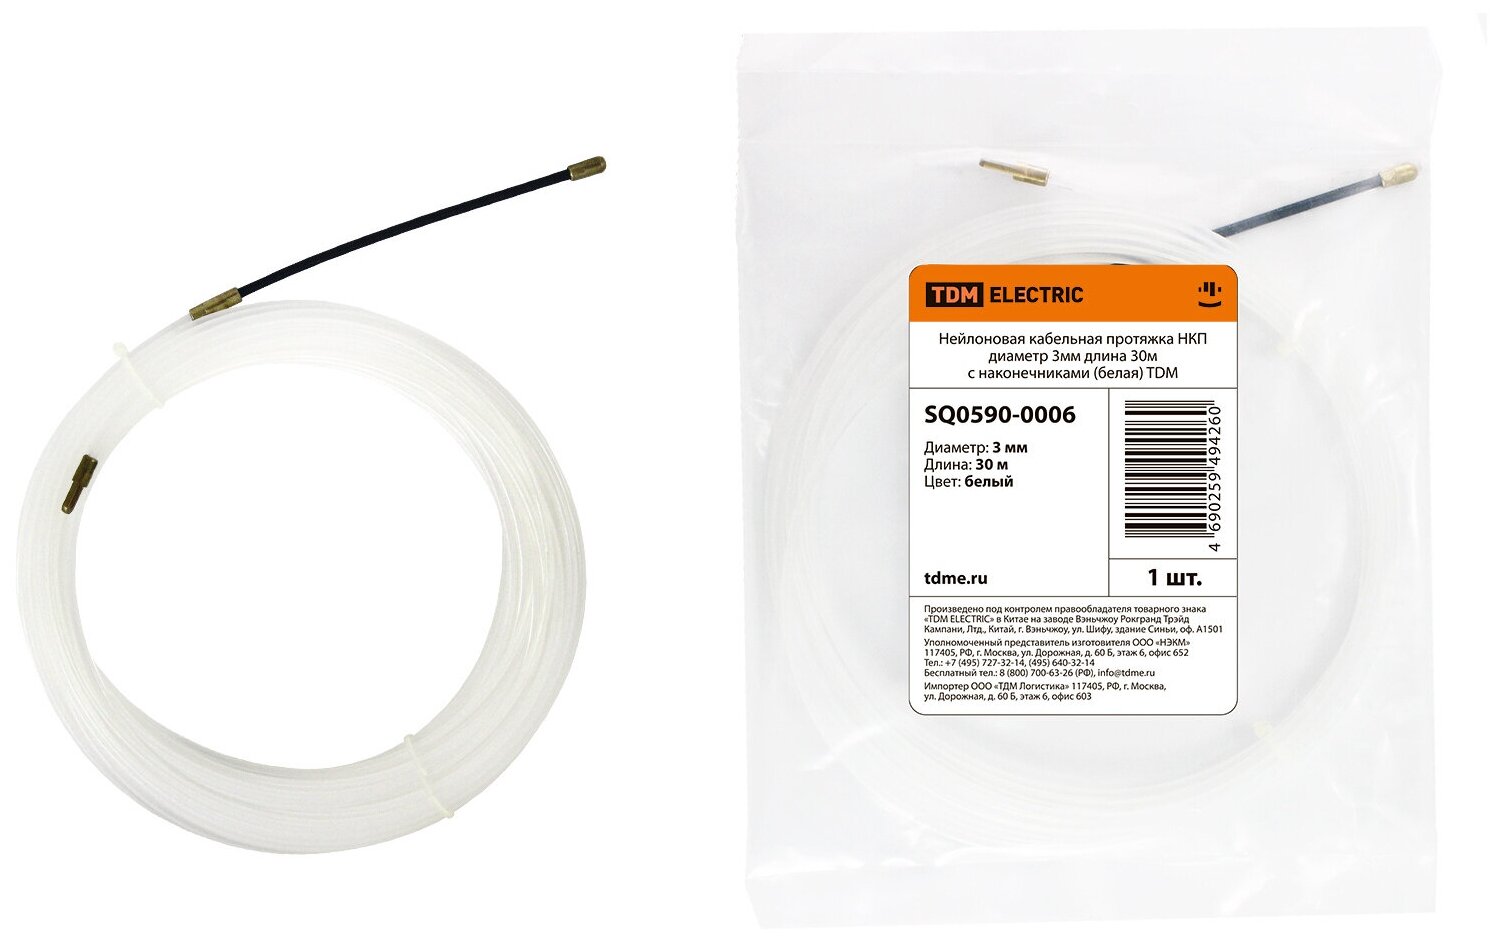 Нейлоновая кабельная протяжка НКП диаметр 3мм длина 30м с наконечниками (белая) TDM SQ0590-0006 (1 шт.)